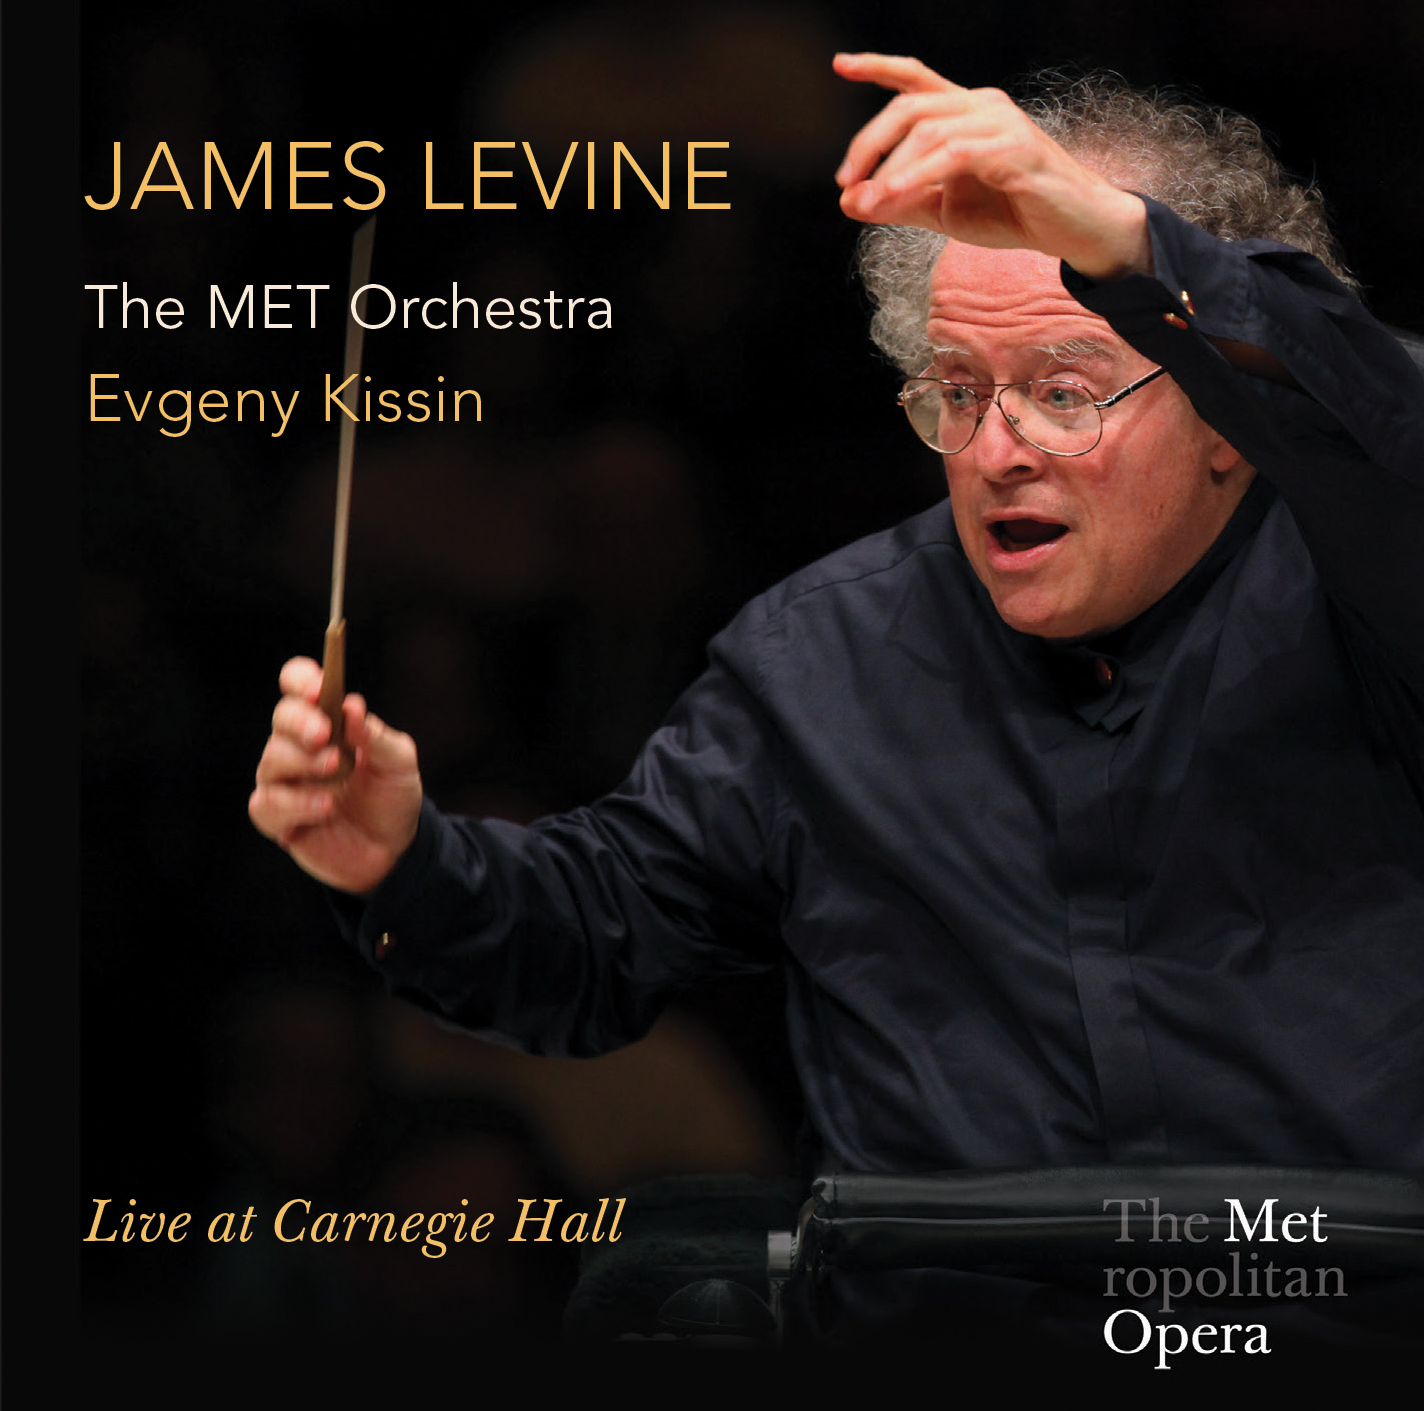 Nuovo CD per James Levine a capo dell'Orchestra del Metropolitan